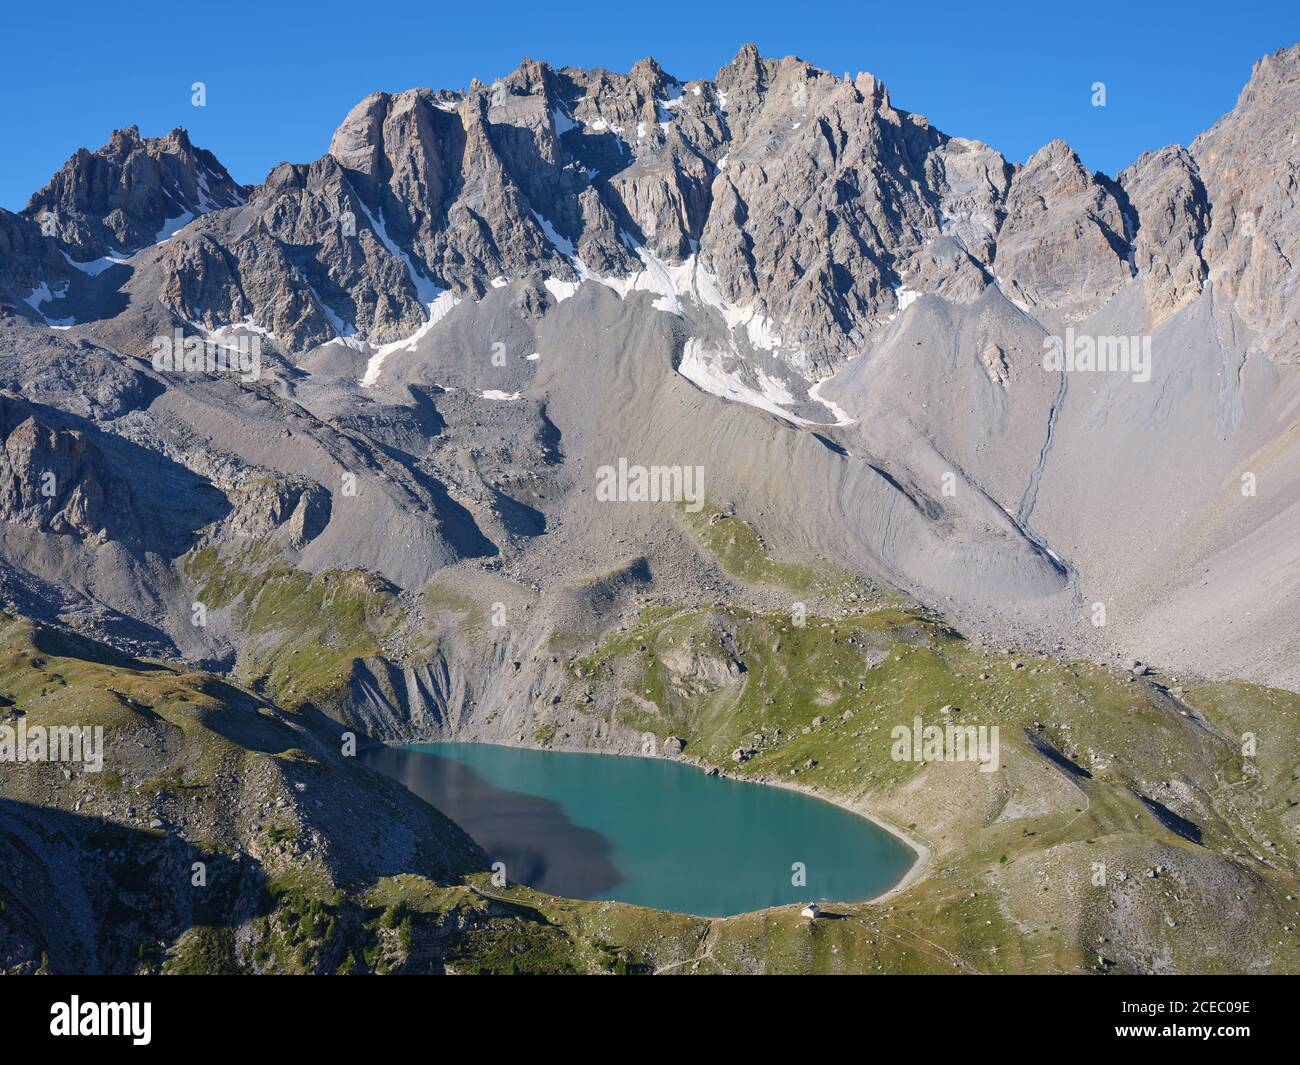 VUE AÉRIENNE. Lac Sainte-Anne, a tarn (alt : 2414m) au pied des pics de la font Sancte (alt : 3385m). Ceillac, Hautes-Alpes, France. Banque D'Images